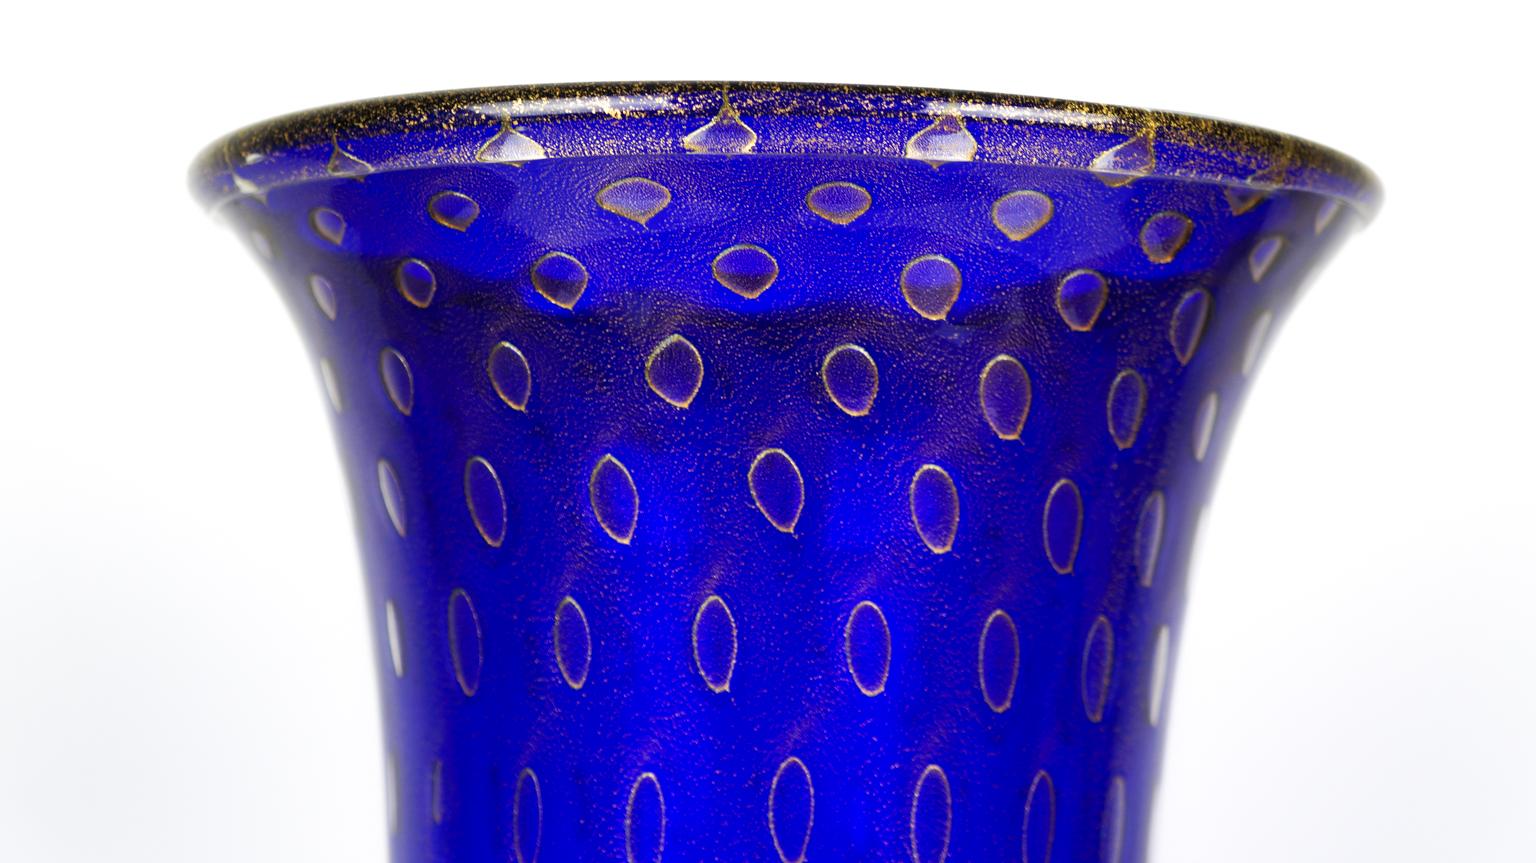 Art Deco Blue Gold Design Italian Art Glass Vase by Stefano Mattiello For Sale 5